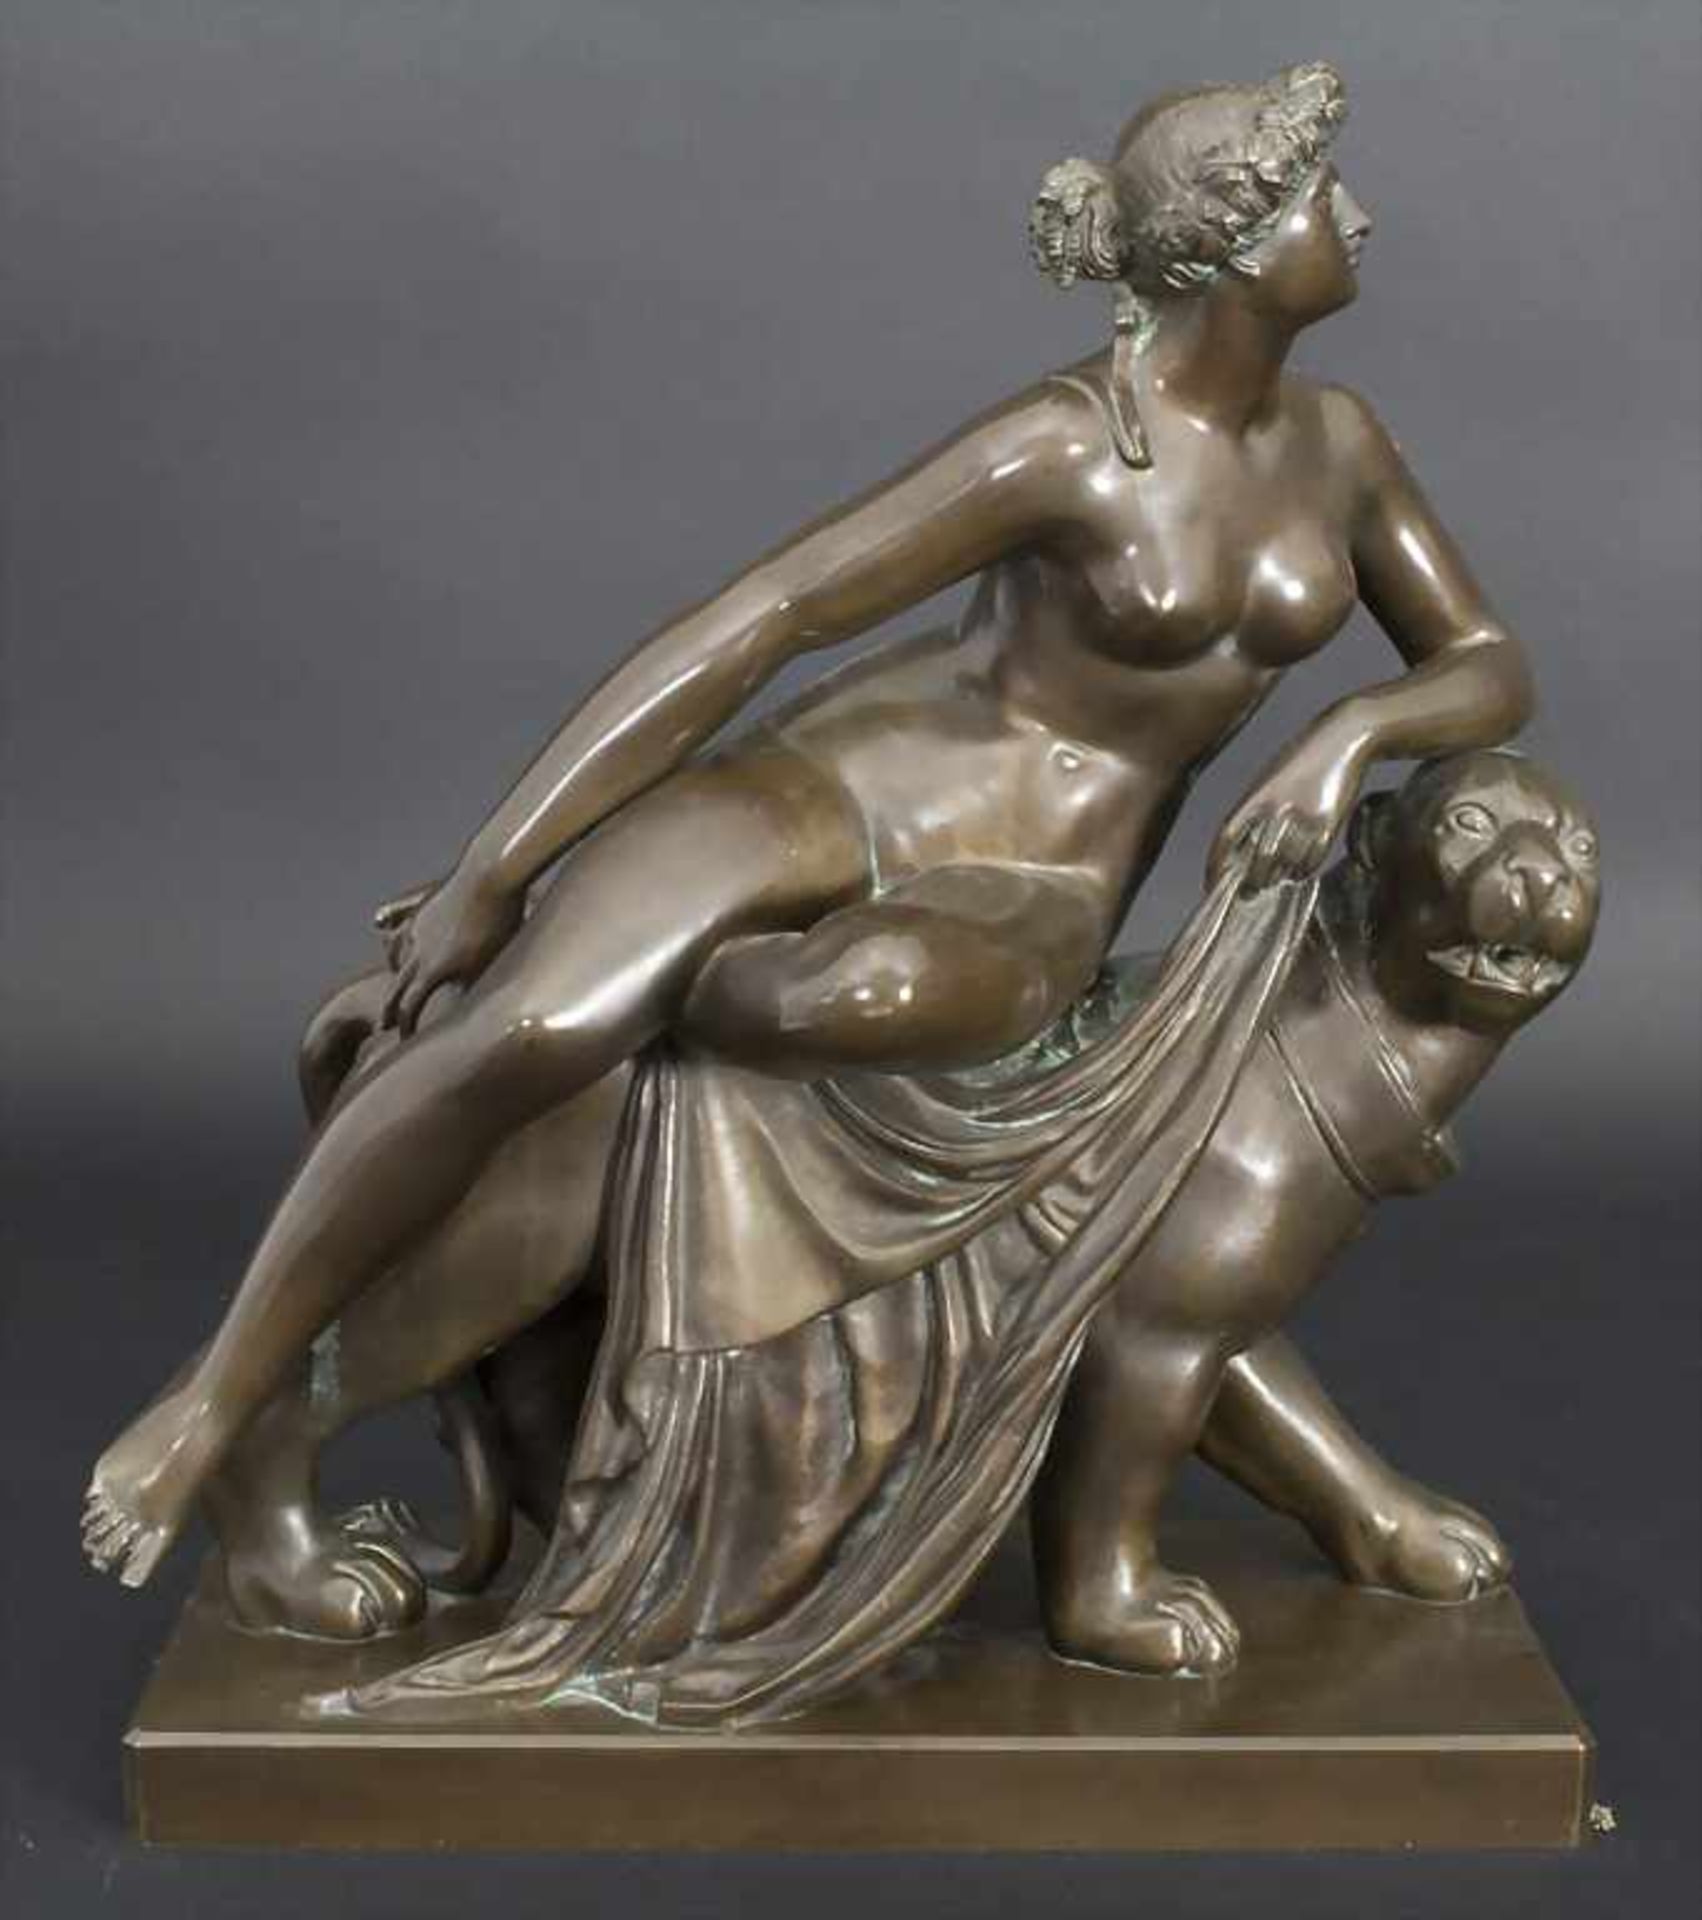 Johann Heinrich VON DANNECKER (1758-1841), Ariadne auf dem Panther, Stuttgart, 1814